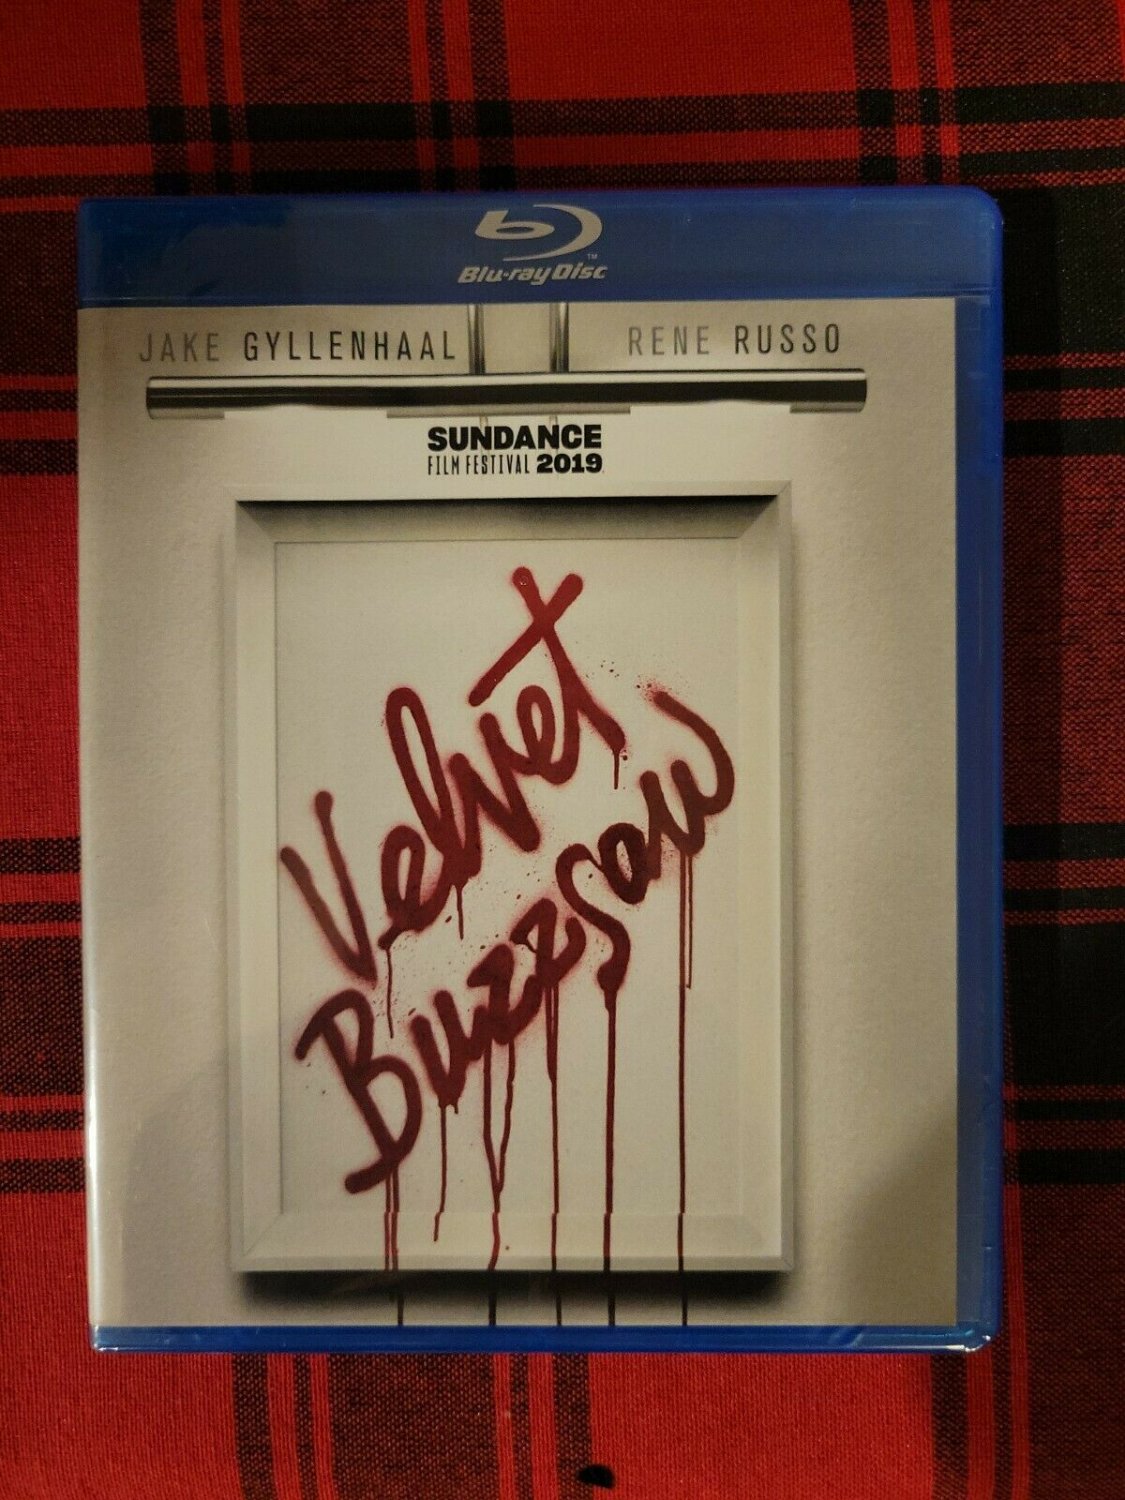 Velvet Buzzsaw (Blu-ray) 2019 Horror